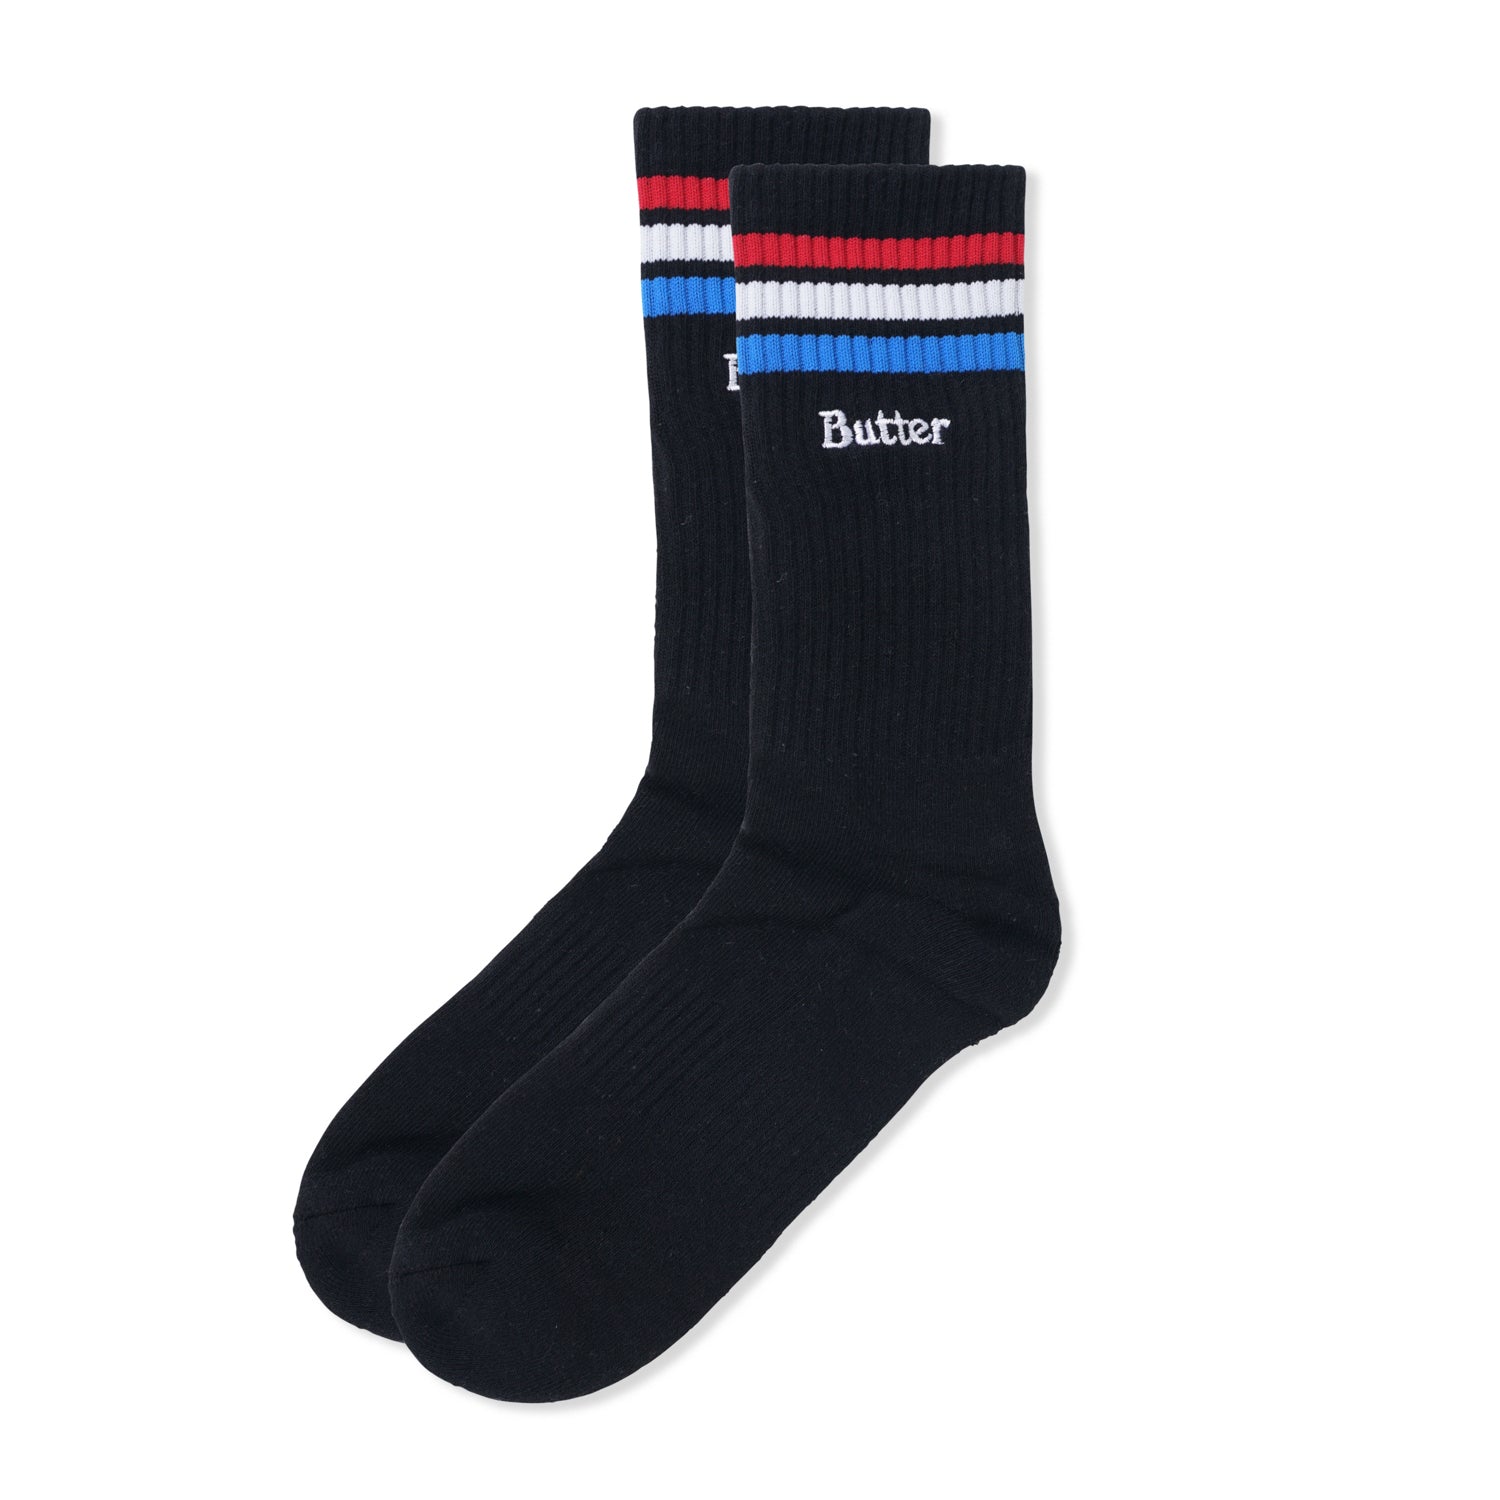 Stripe Socks, Black